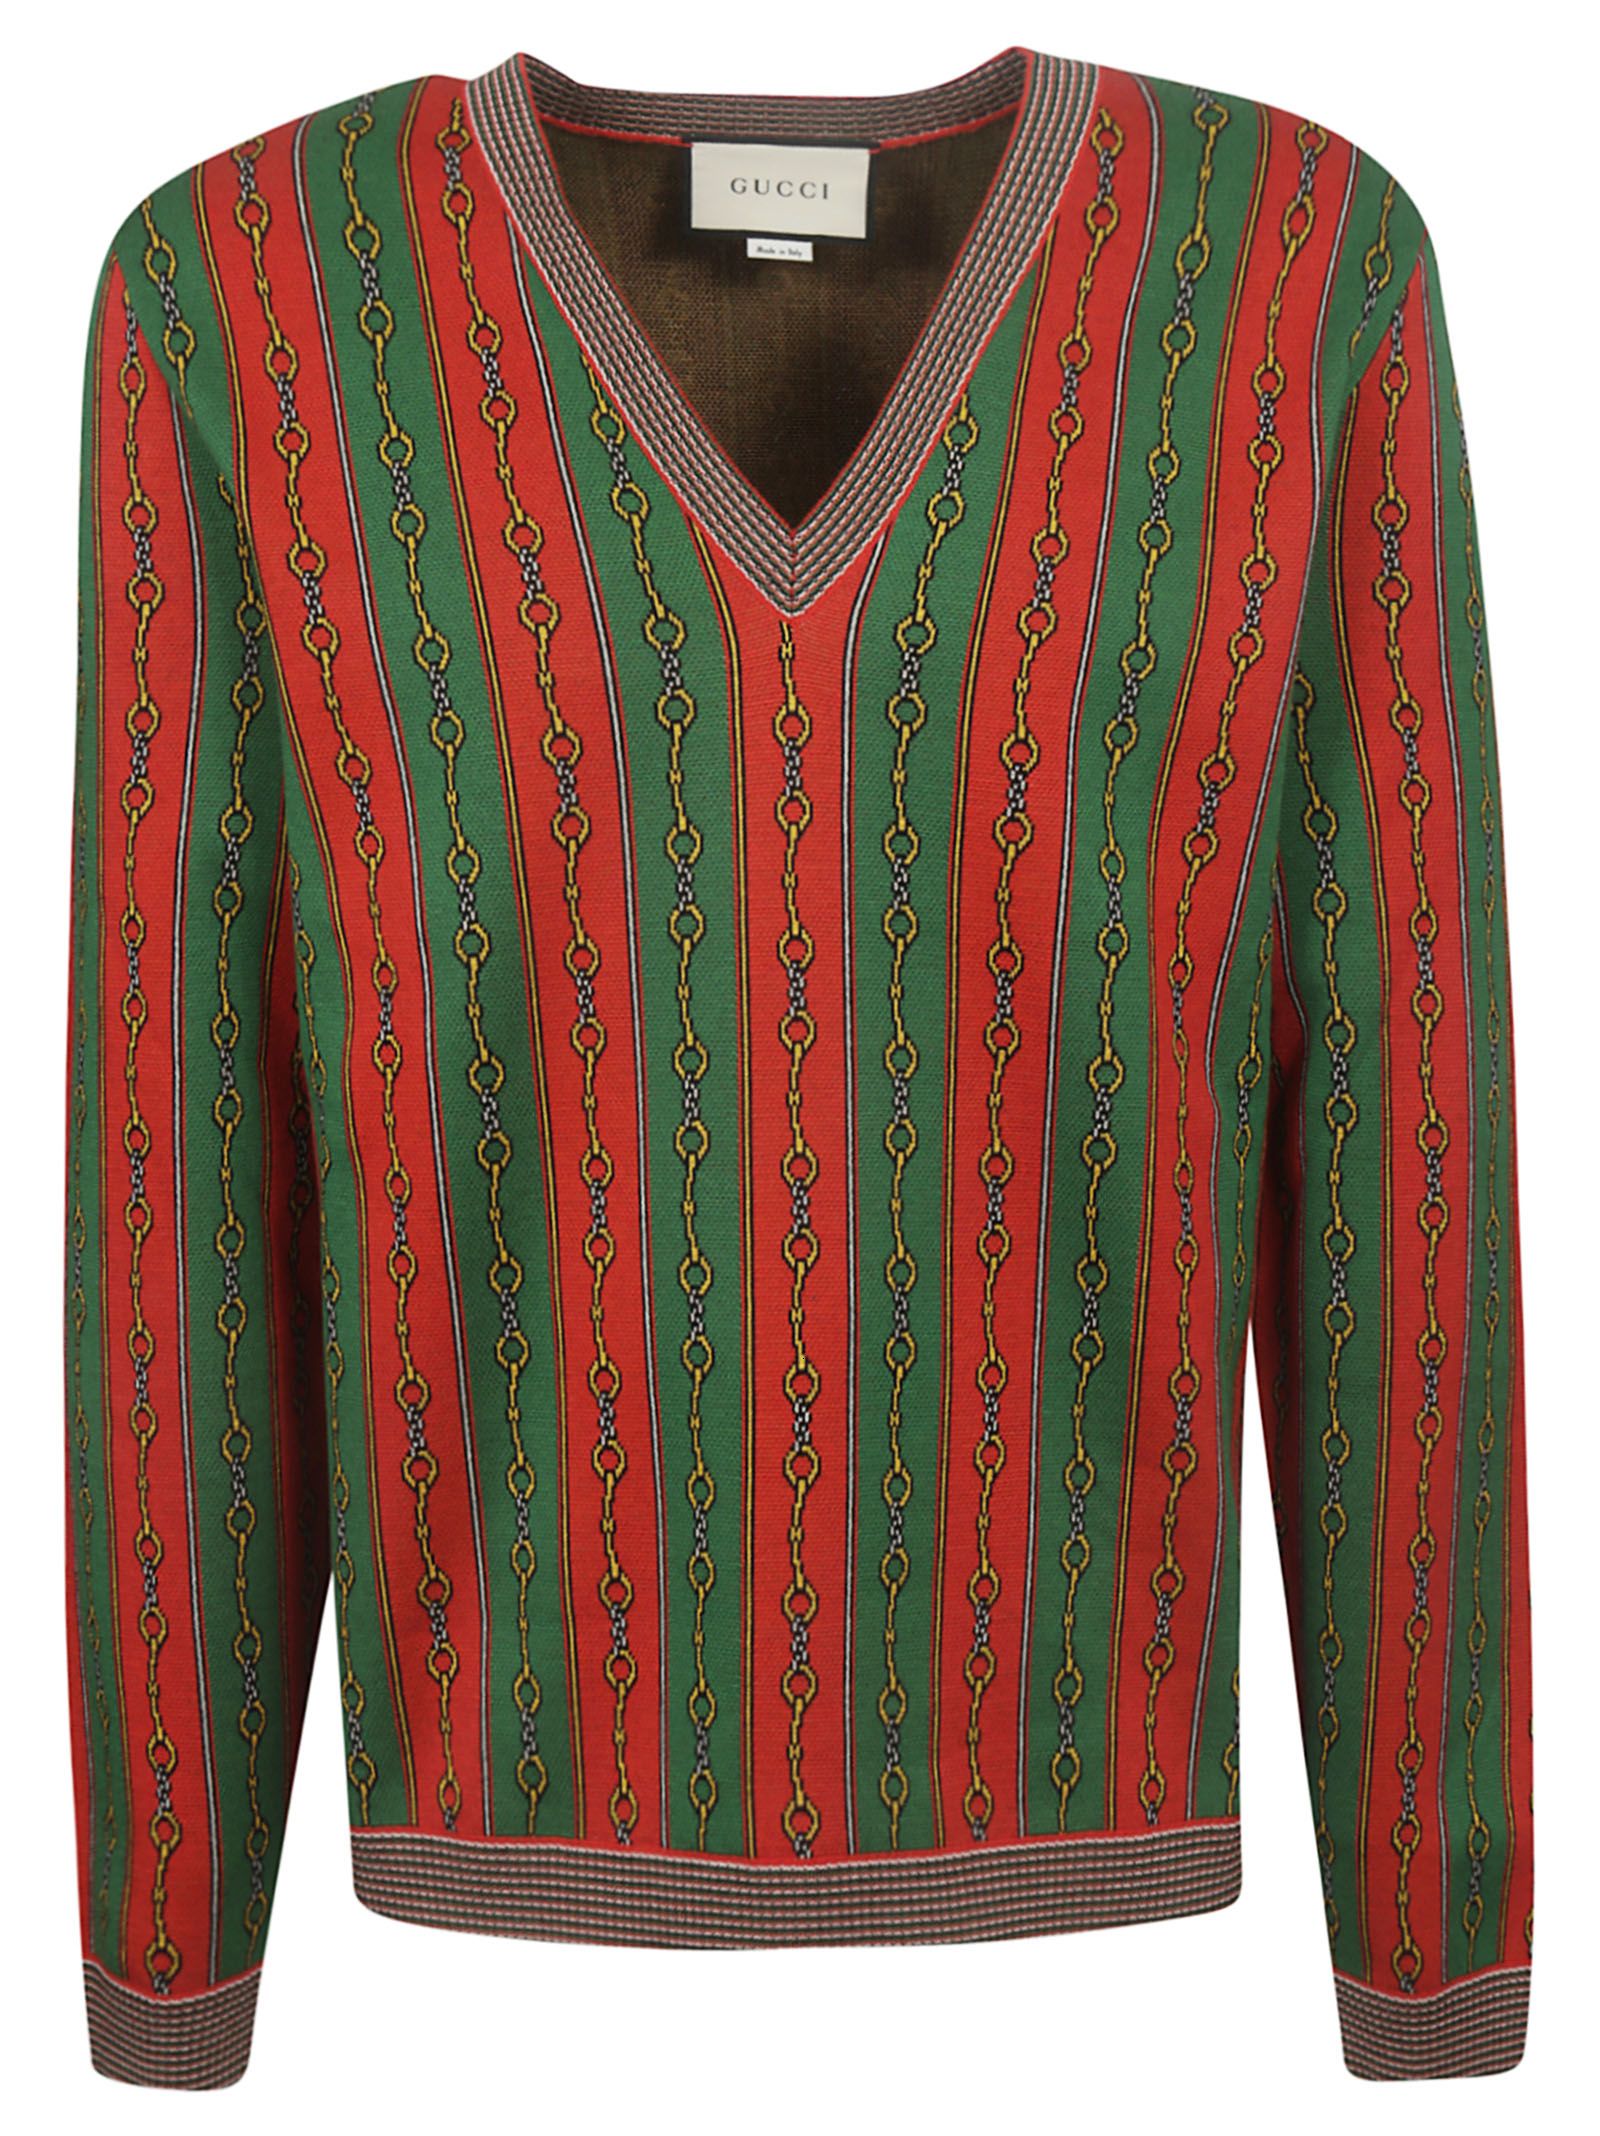 Gucci Gucci Horsebit Chain Print Sweater - Live Red/multicolor